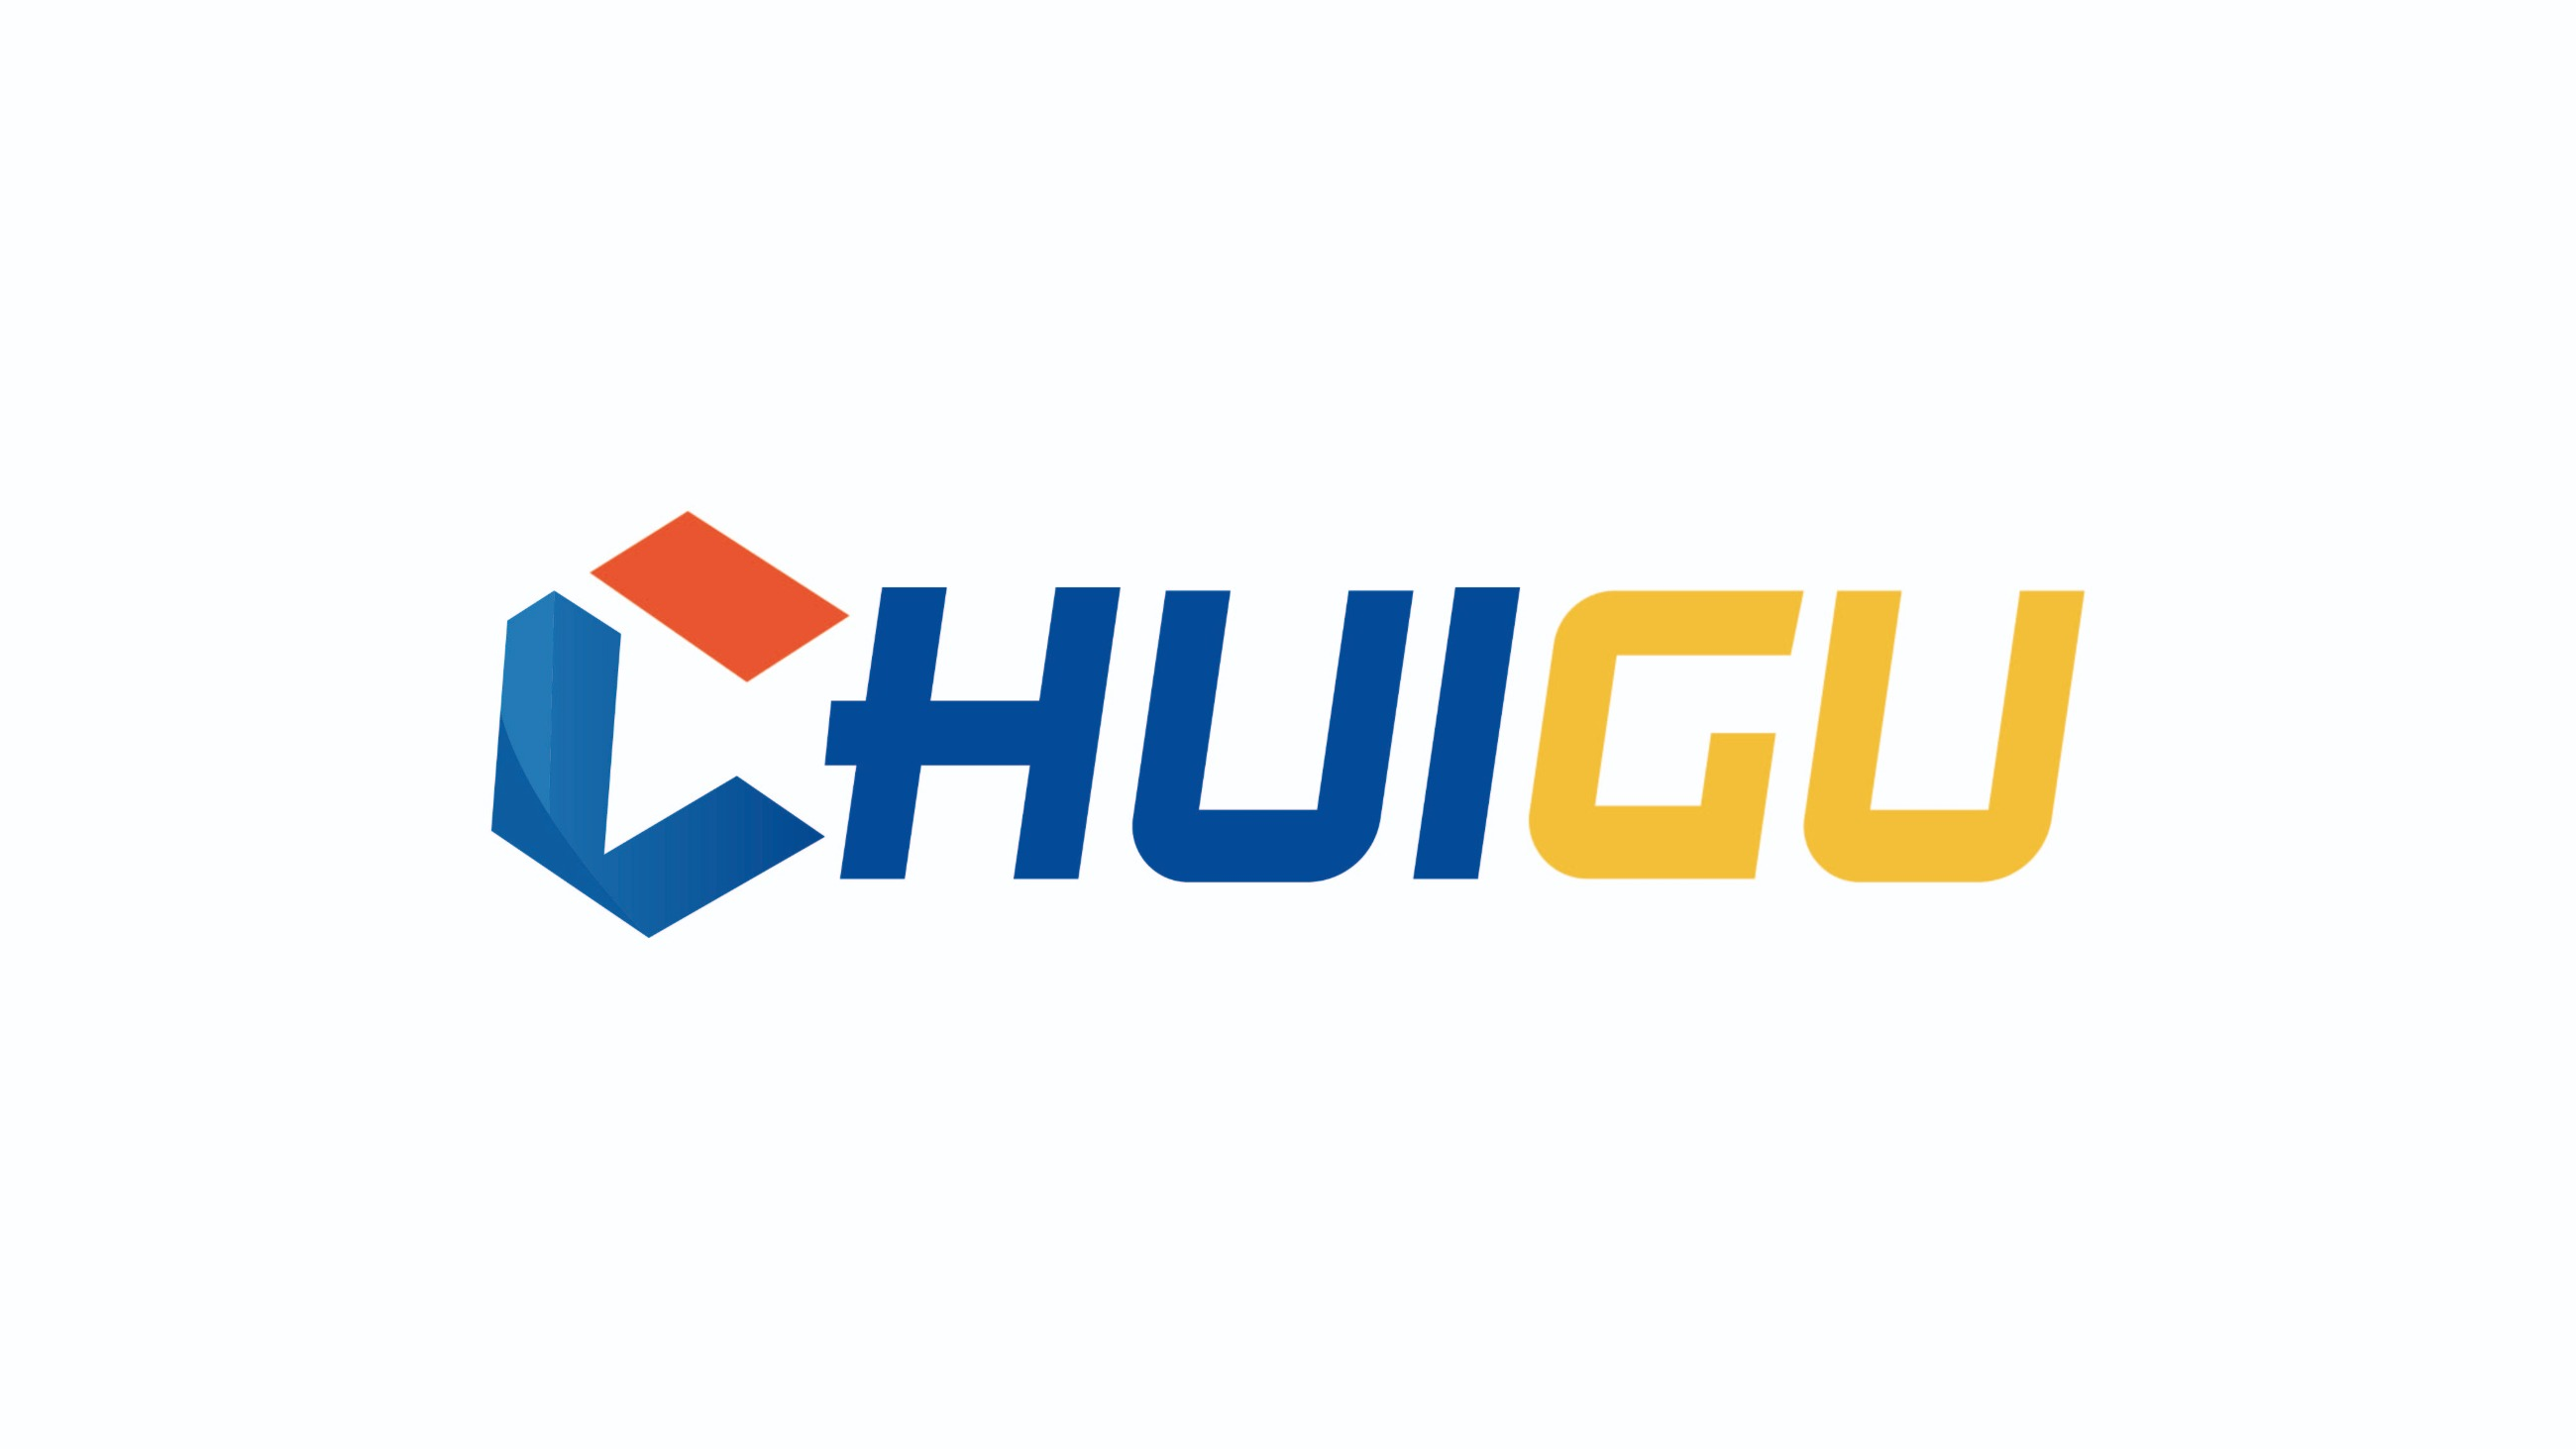 株洲湘冶数控刀片生产厂家-CHUIGU官网专注高端数控刀具